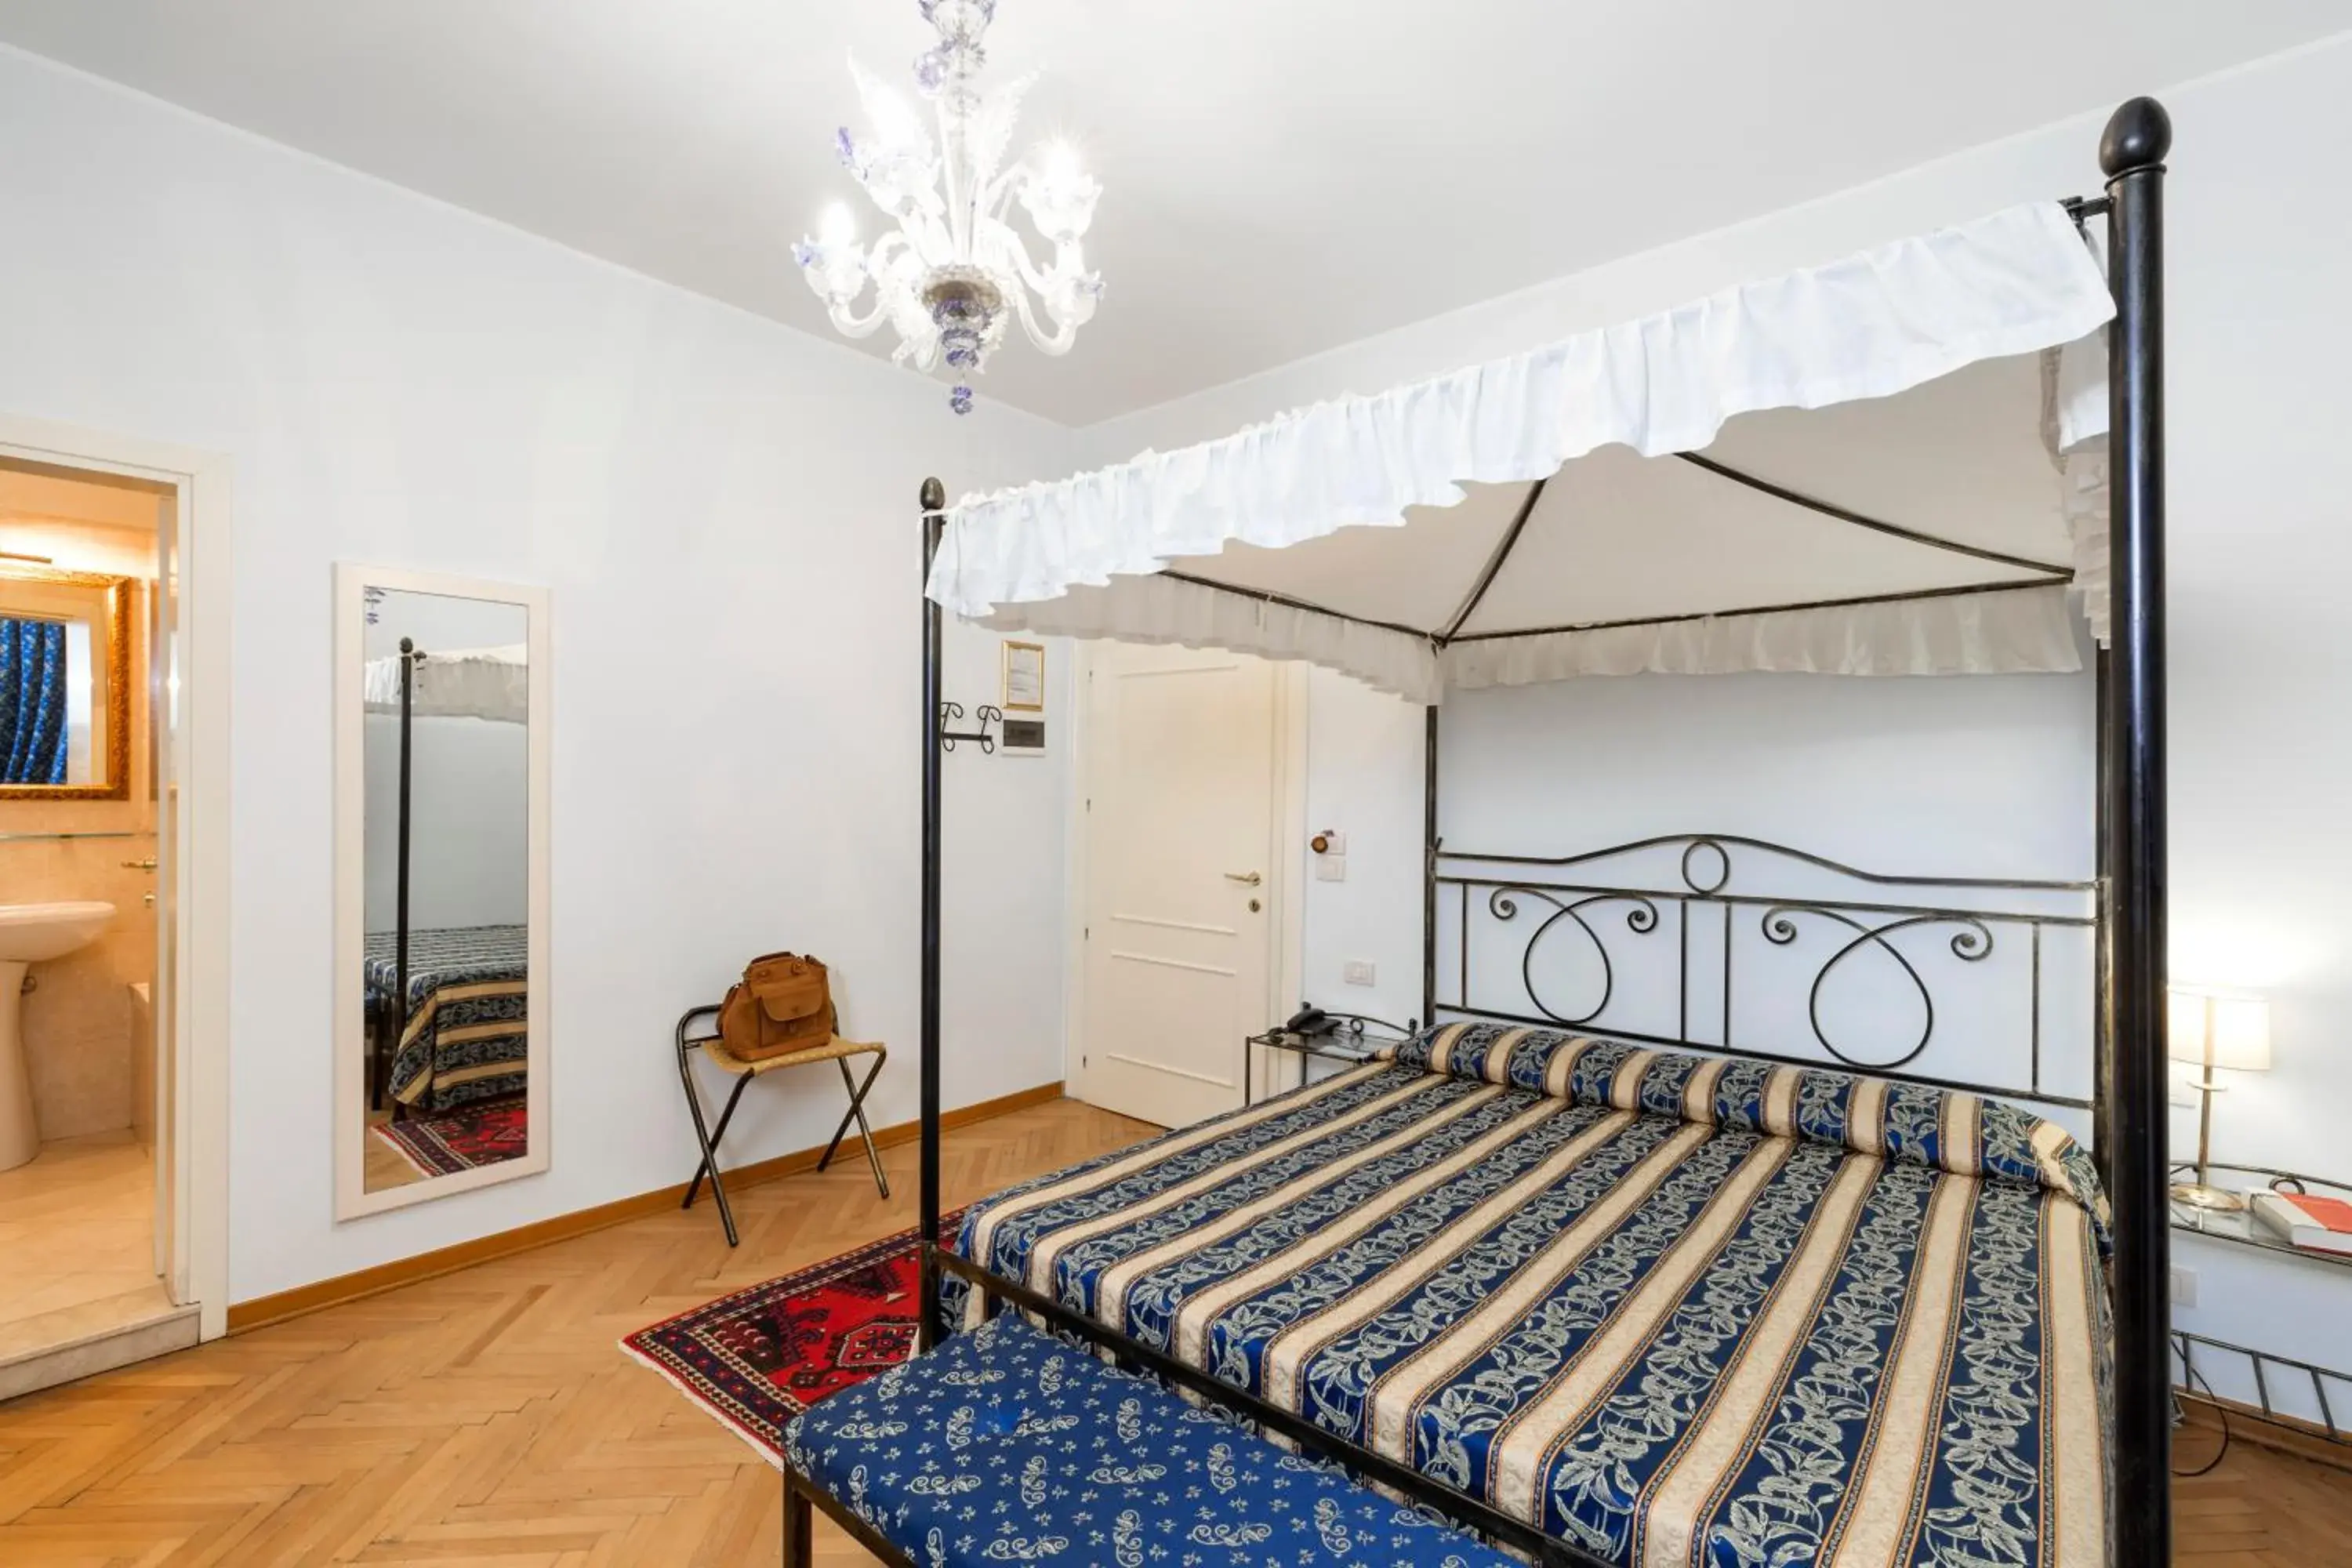 Bed in Villa Casanova